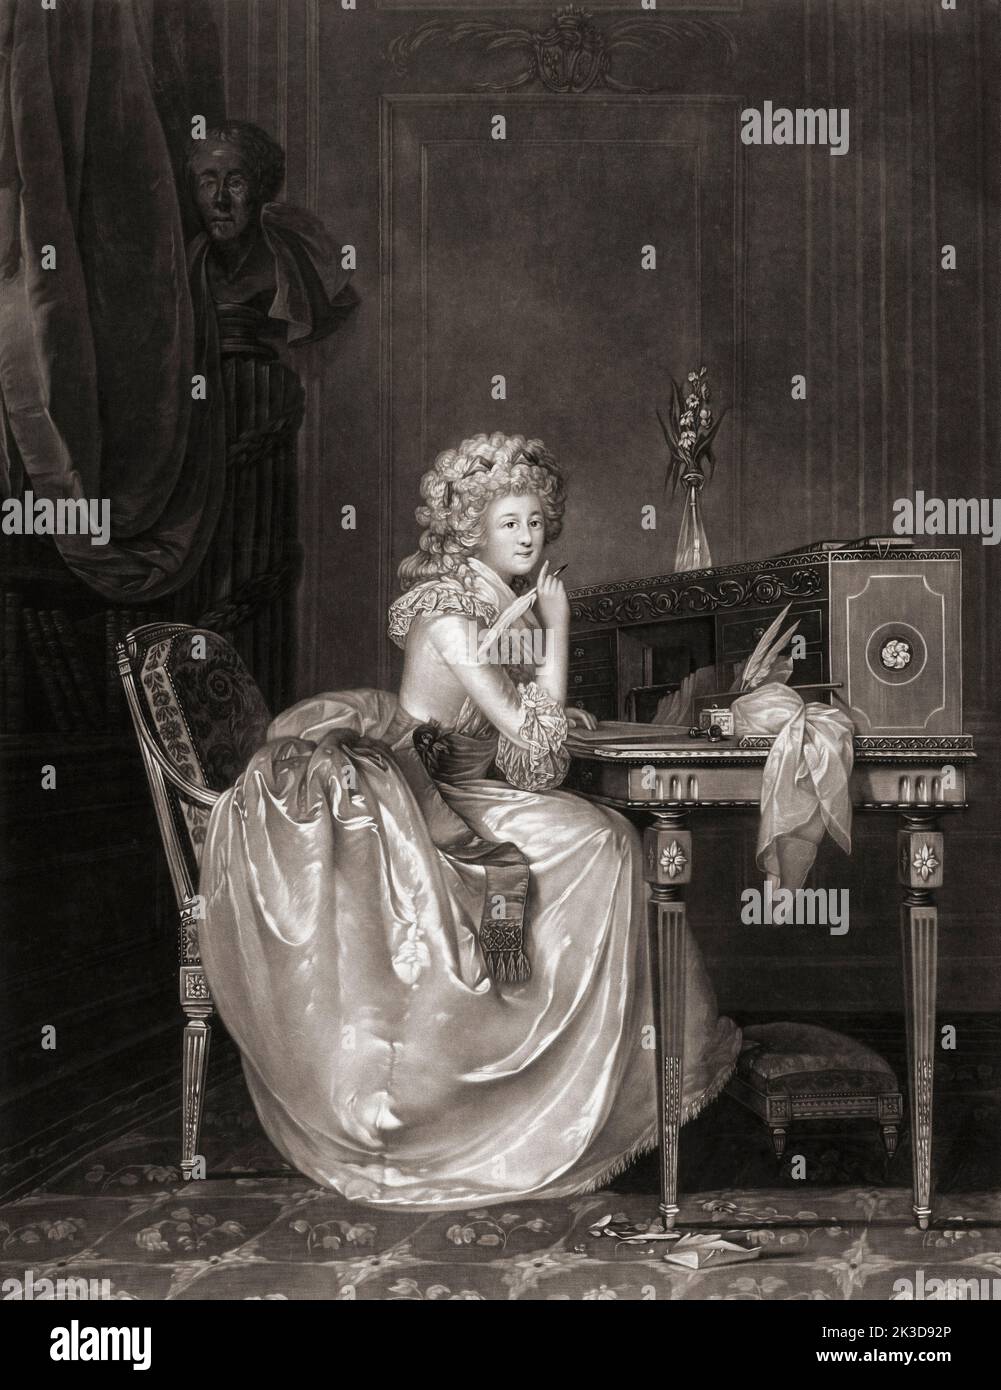 Marie-Louise Thérèse de Saboya-Carignan, Princesse de Lamballe, 1749 - 1792. Compañera íntima y dama en espera de María Antonieta. Fue asesinada durante la Revolución Francesa. Foto de stock